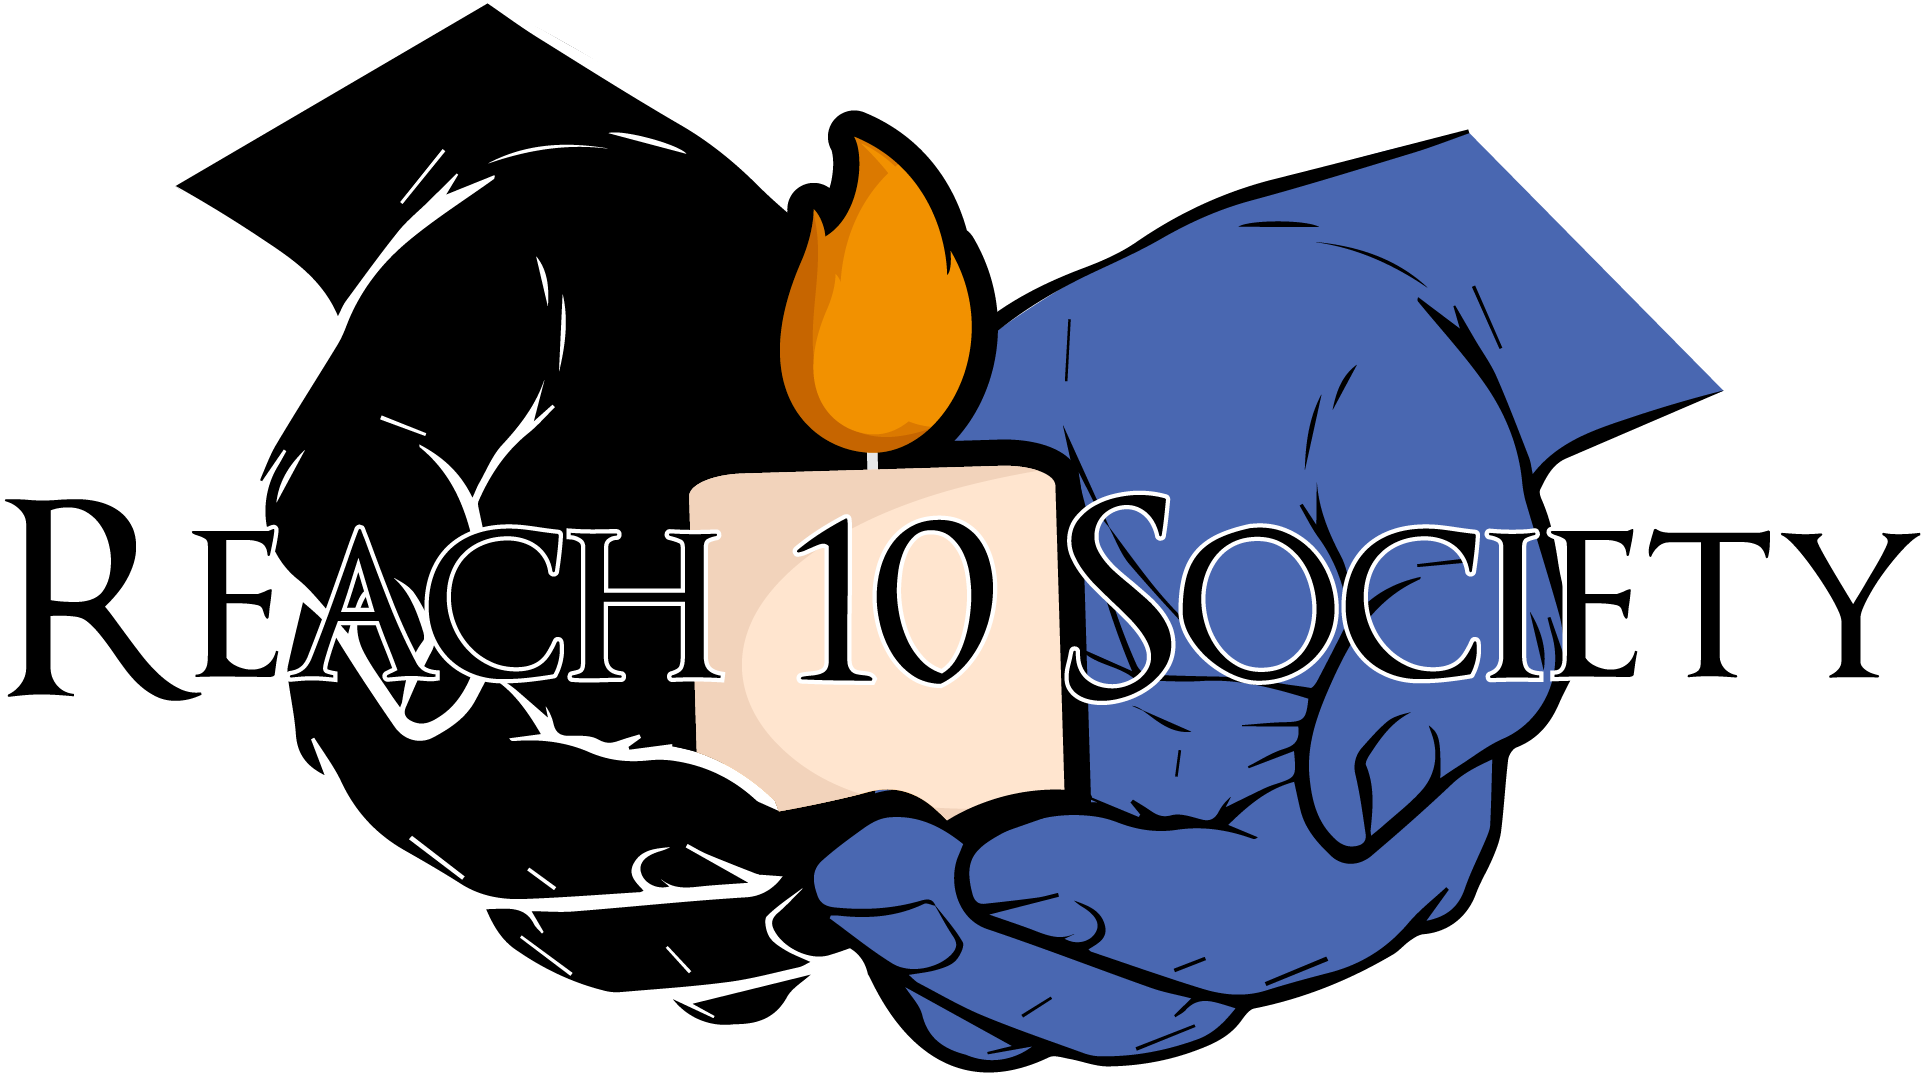 Reach 10 Society